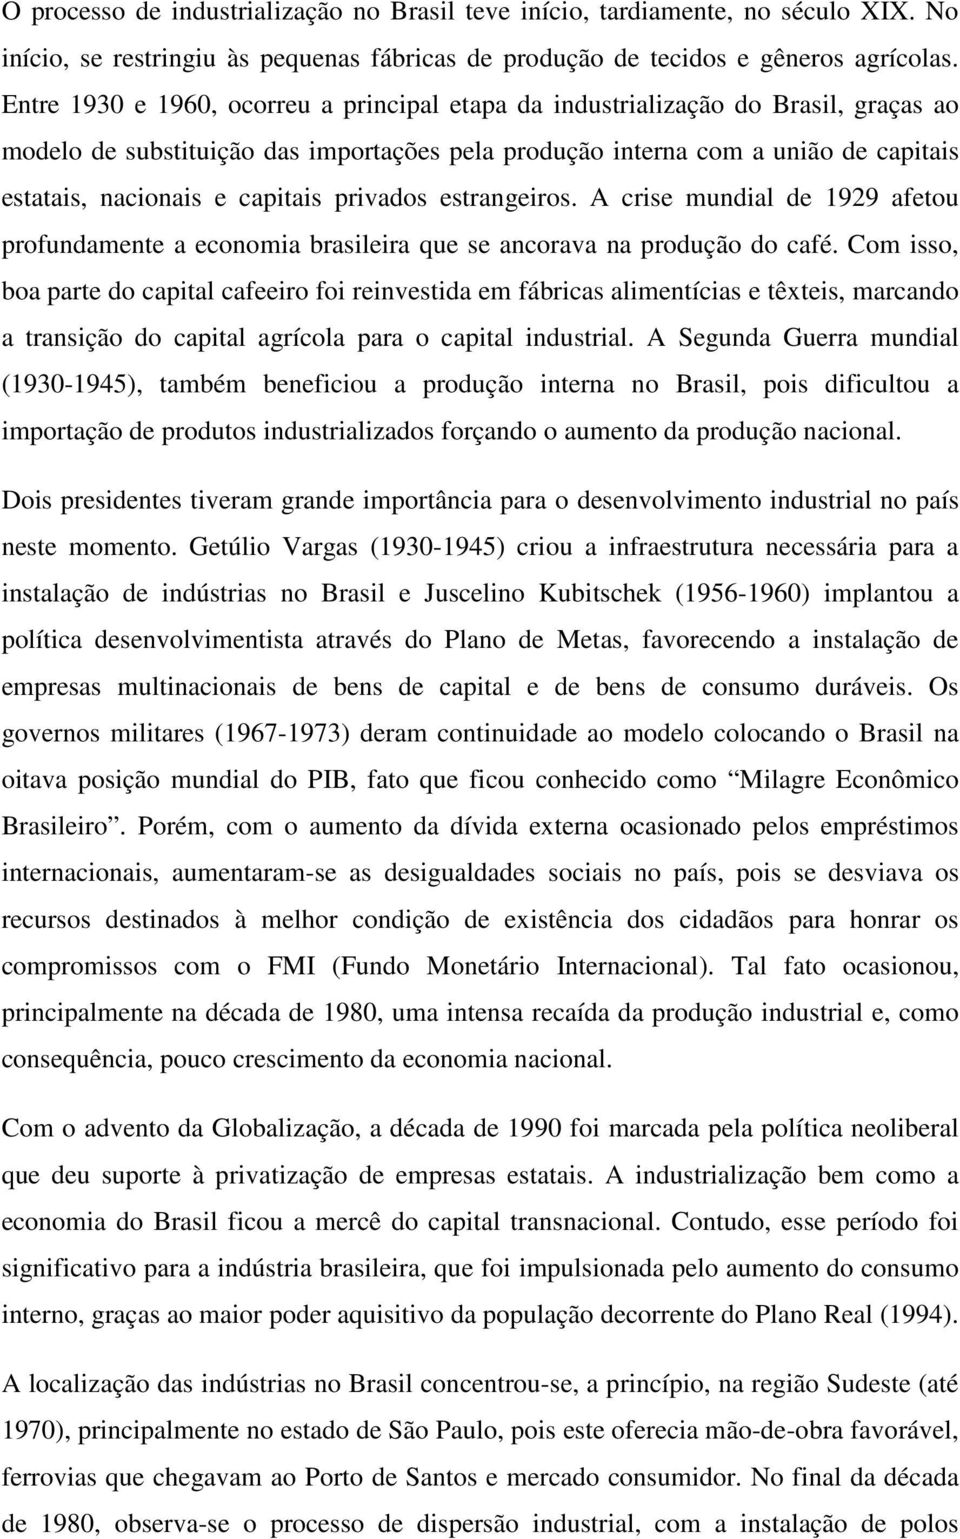 capitais privados estrangeiros. A crise mundial de 1929 afetou profundamente a economia brasileira que se ancorava na produção do café.